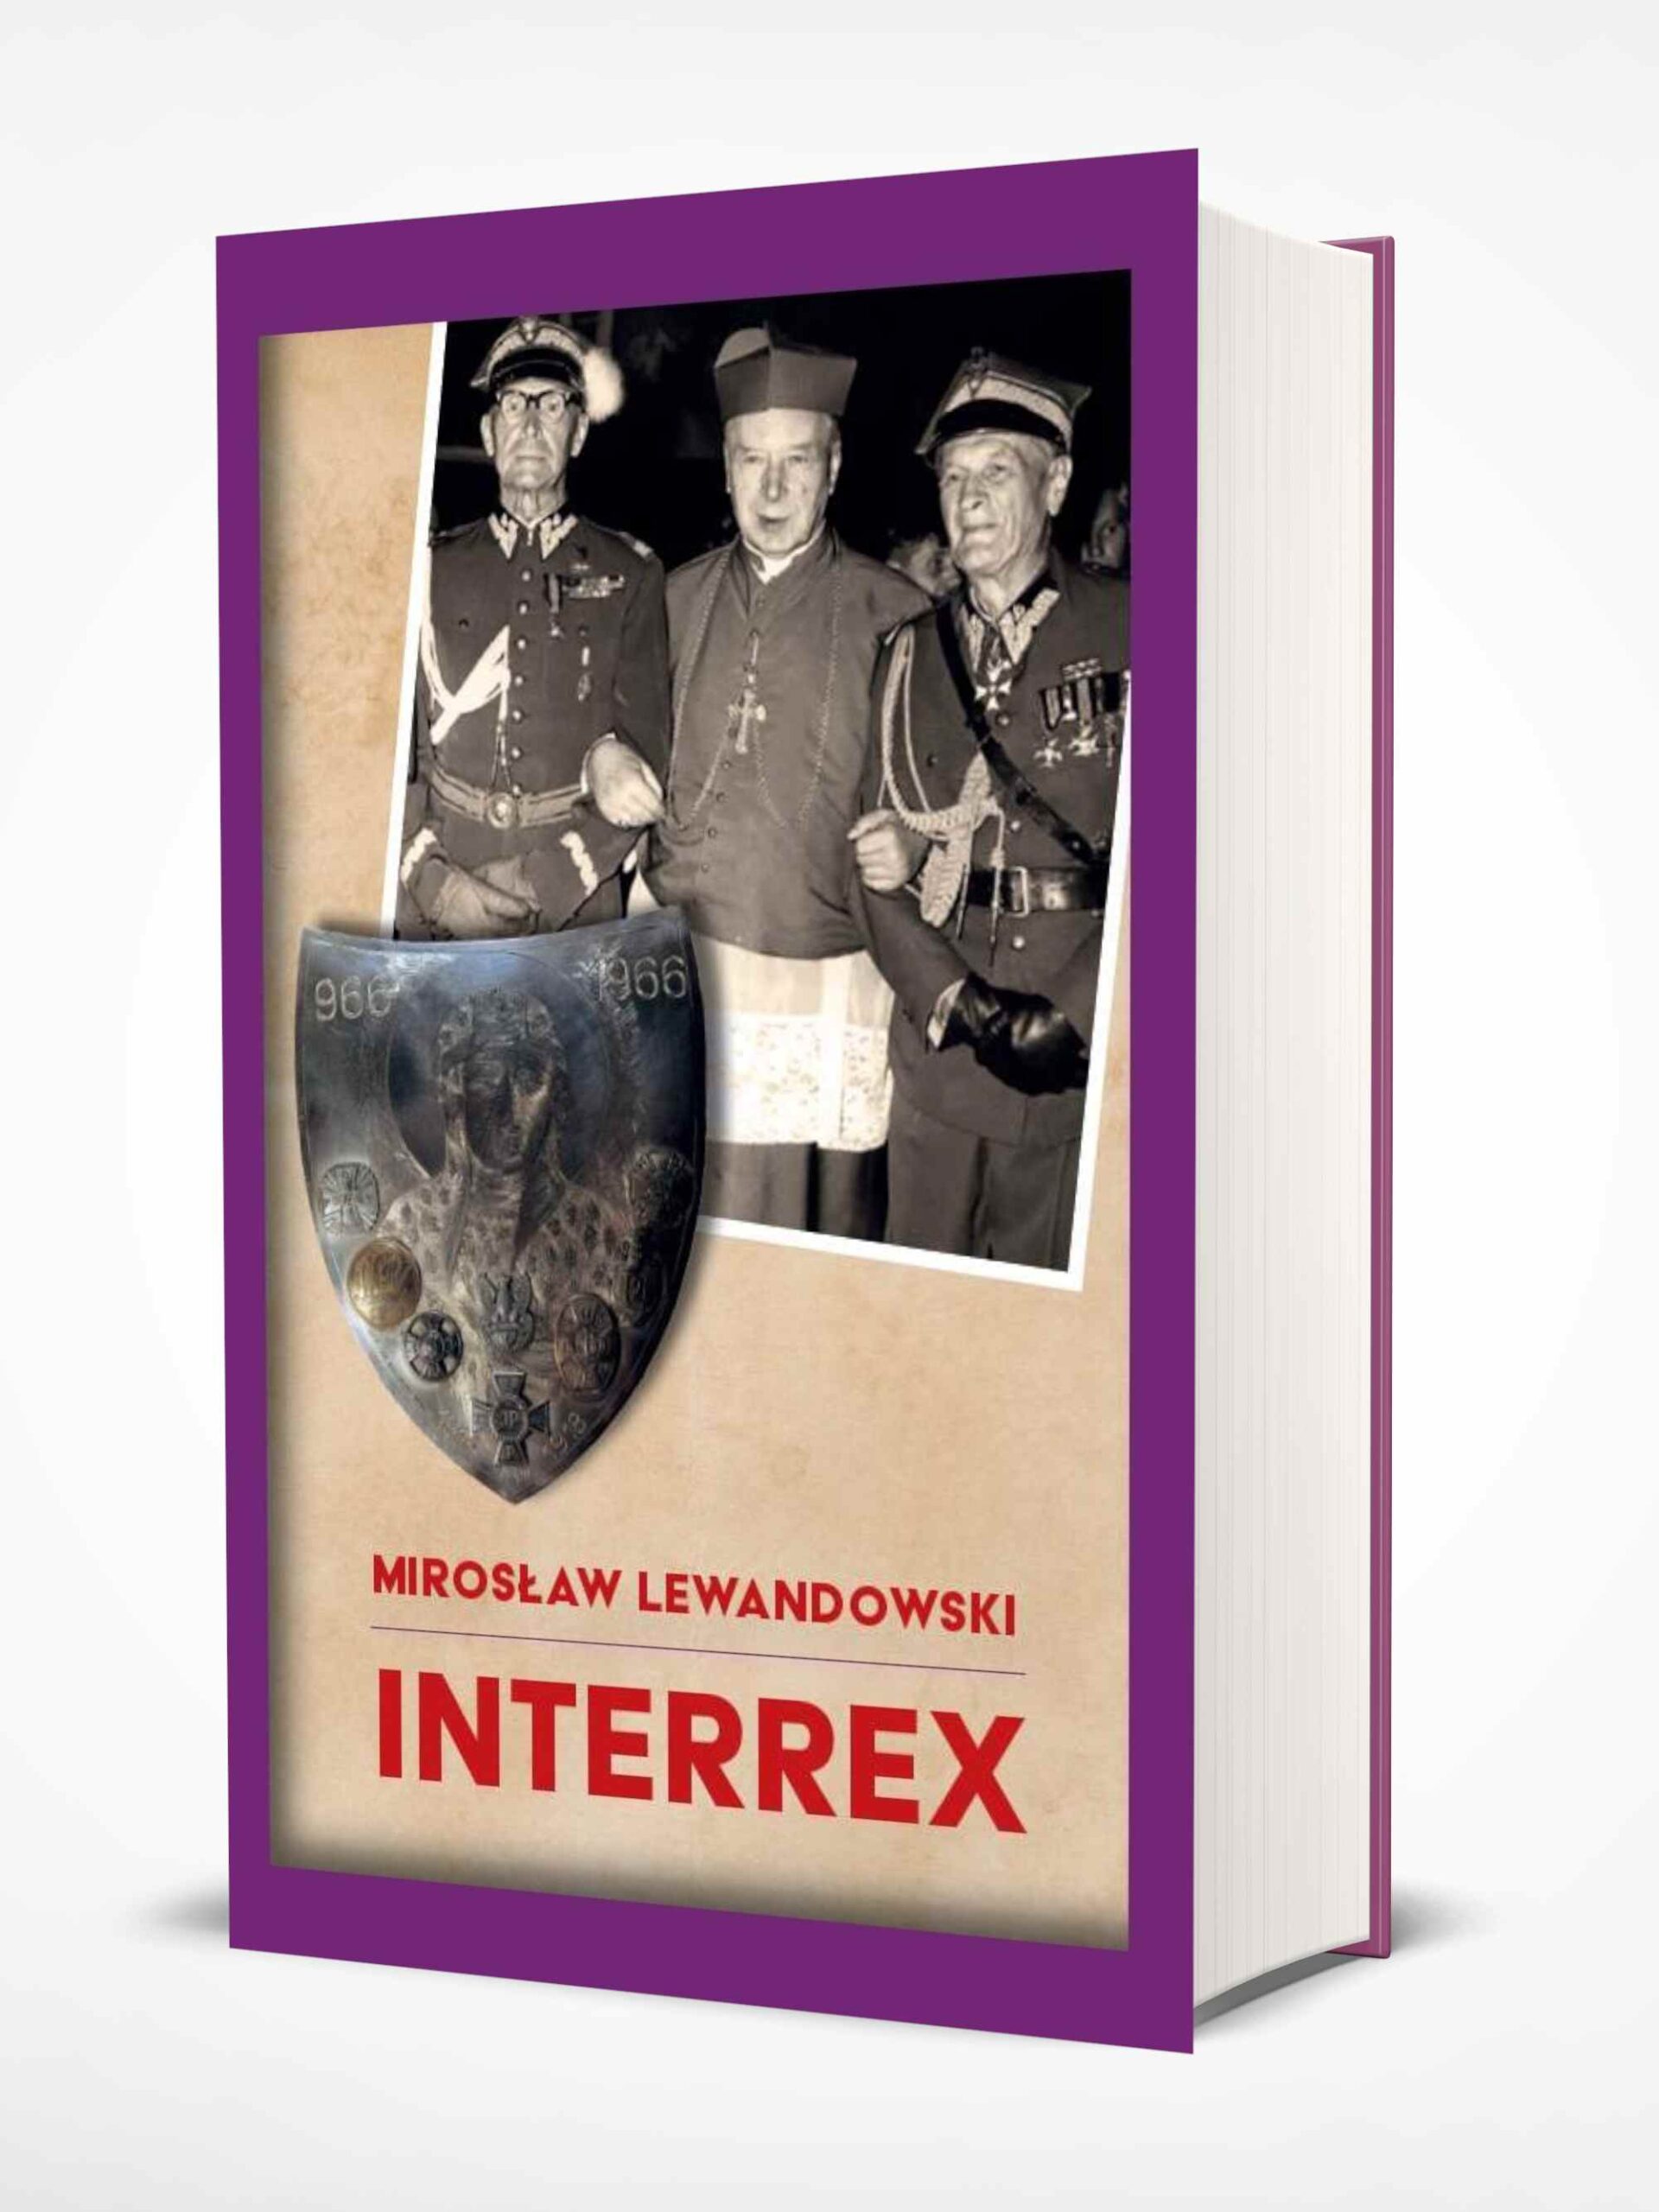 Interrex (M.Lewandowski)